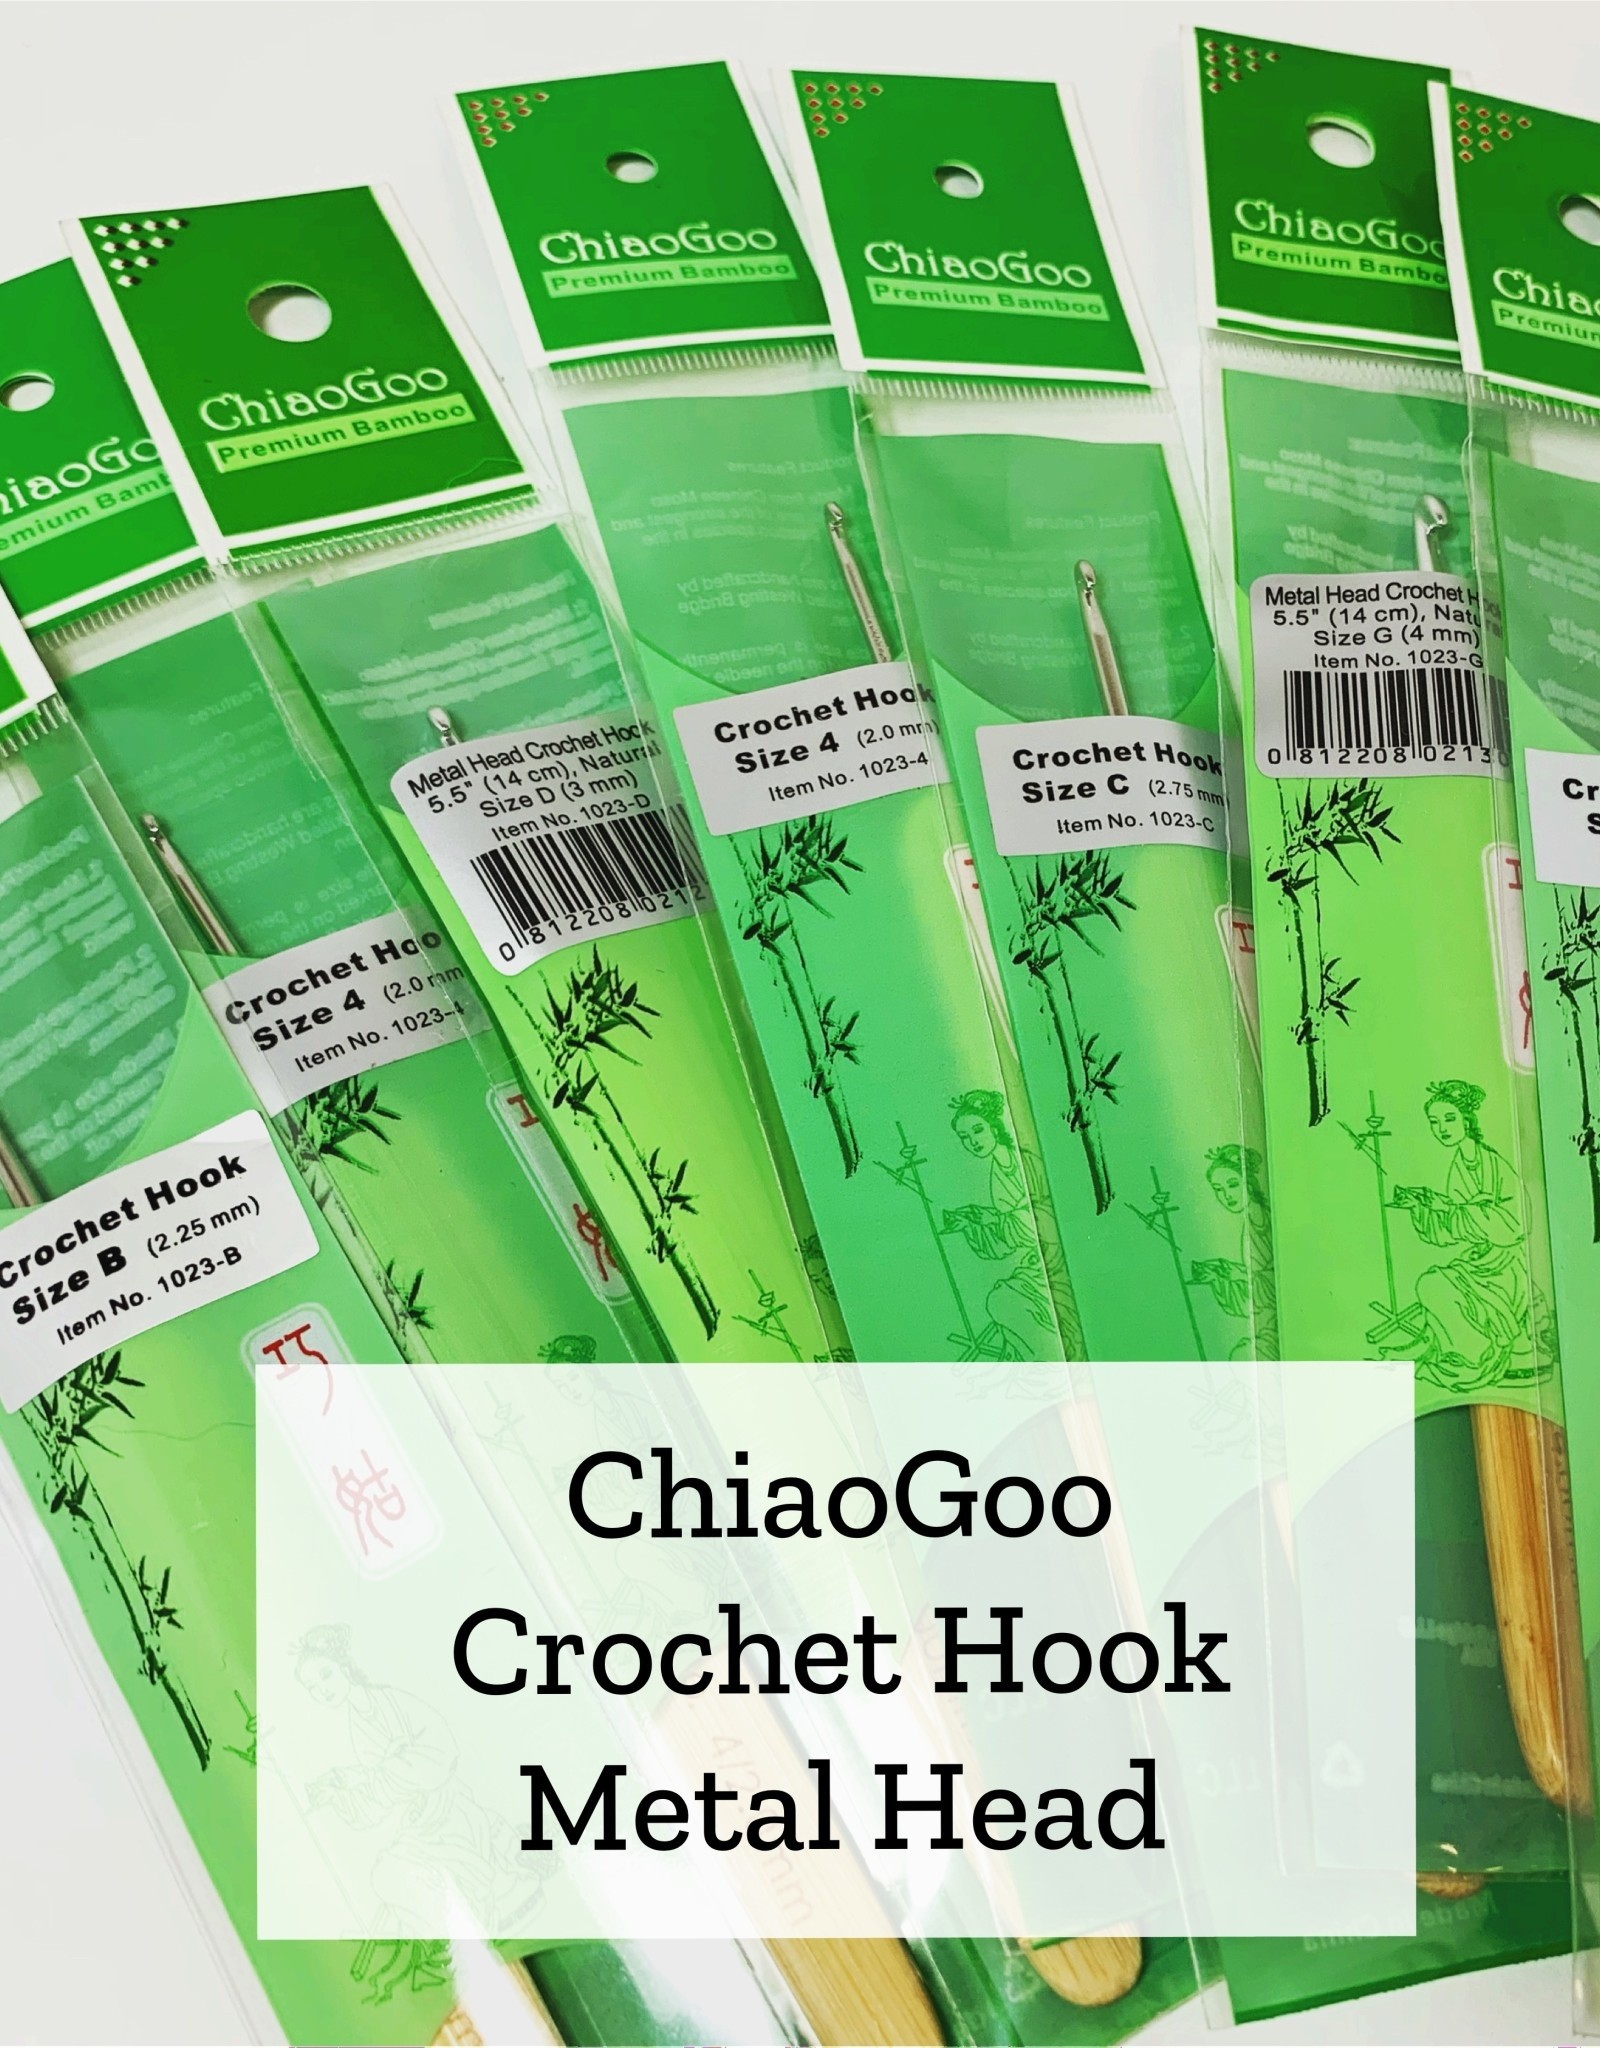 ChiaoGoo Metal Head Crochet - 6 mm